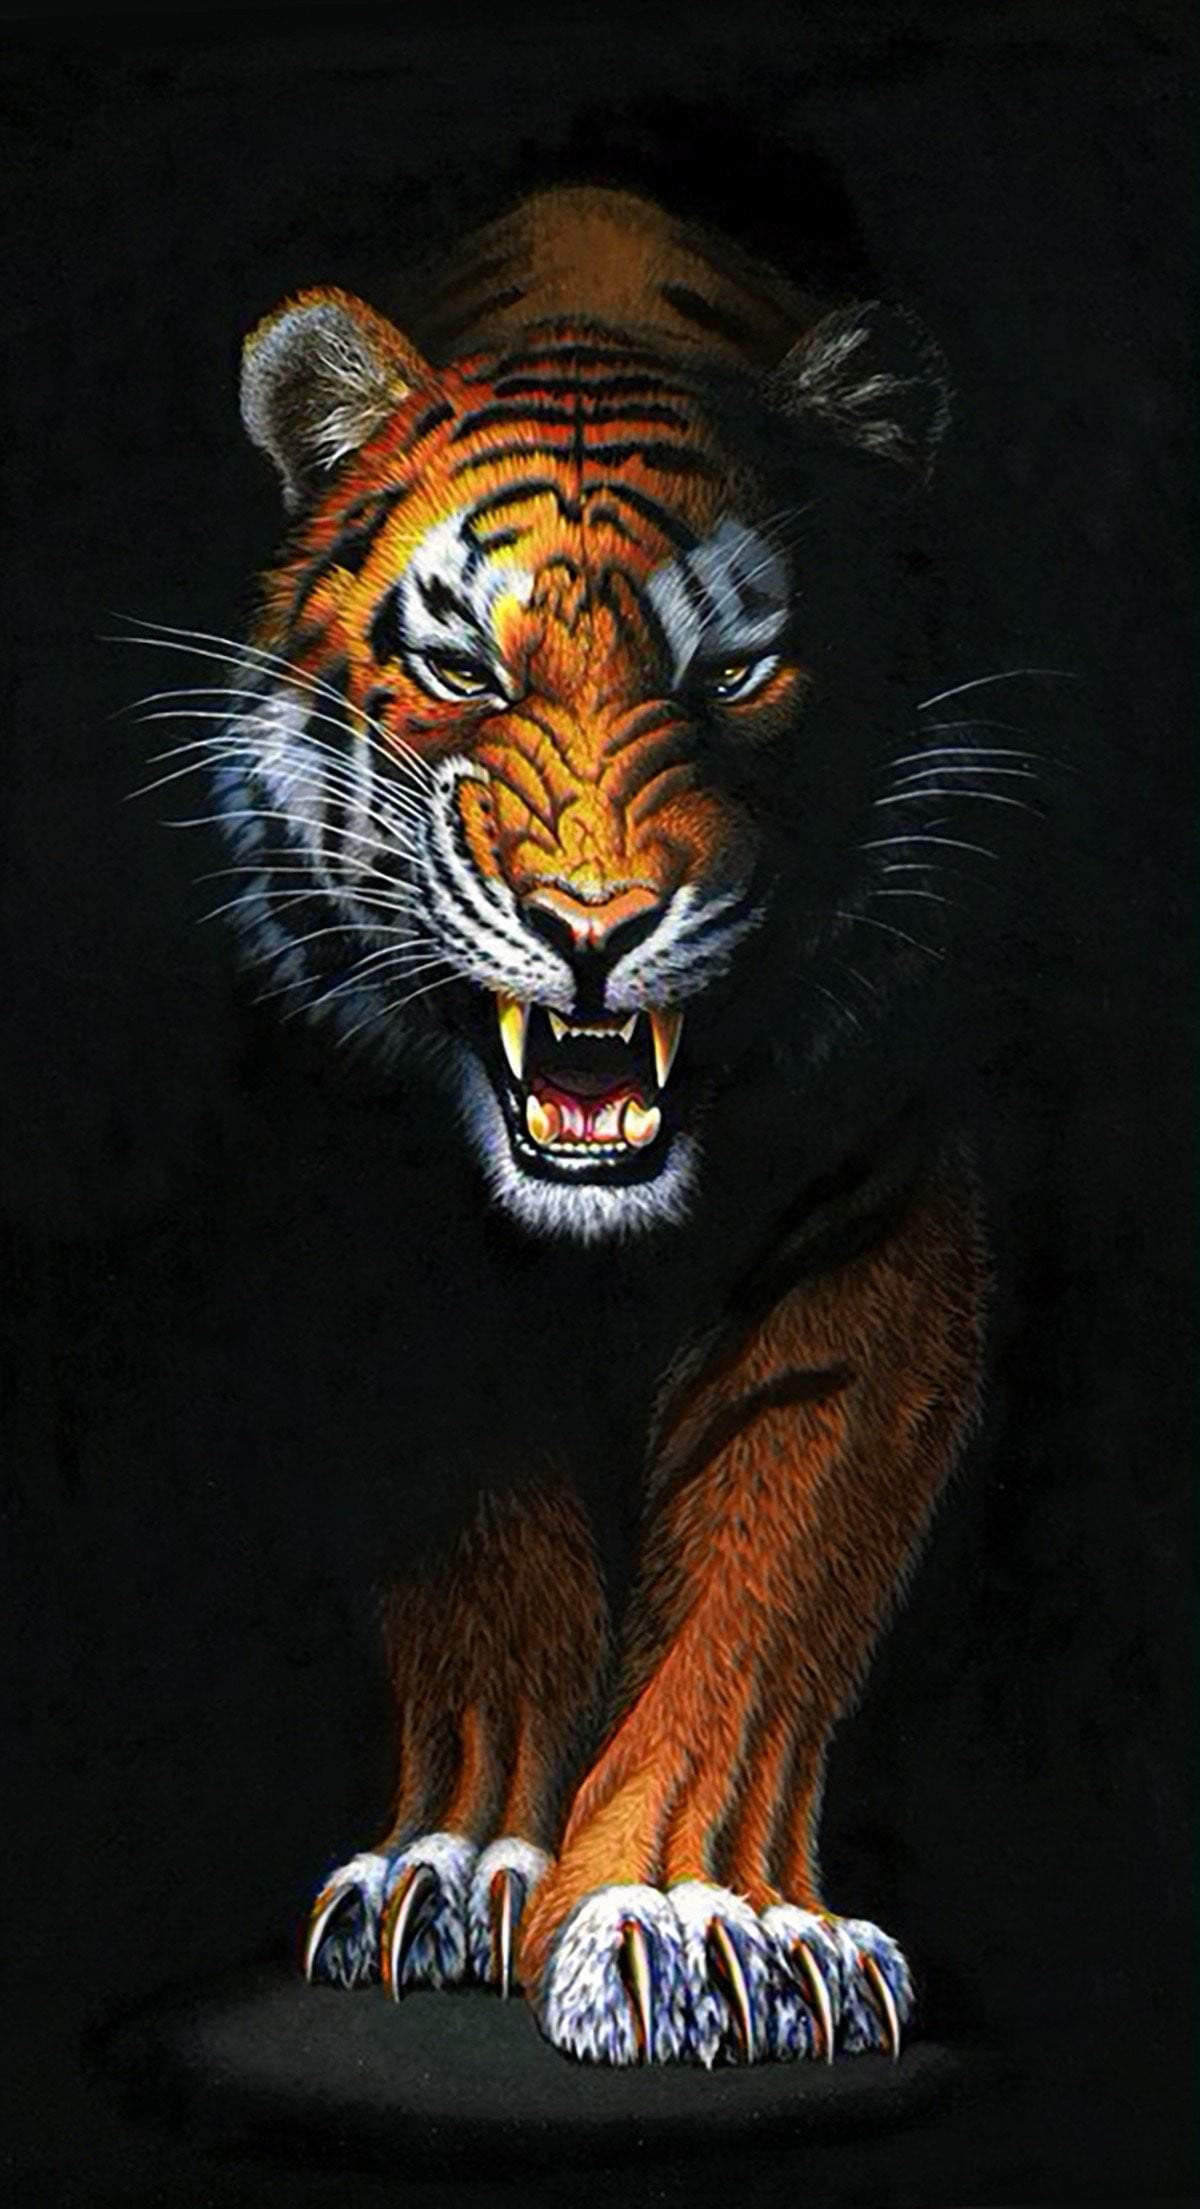 Stalking Tiger Diamond Painting Set by Wizardi. WD2408 Diamond Art